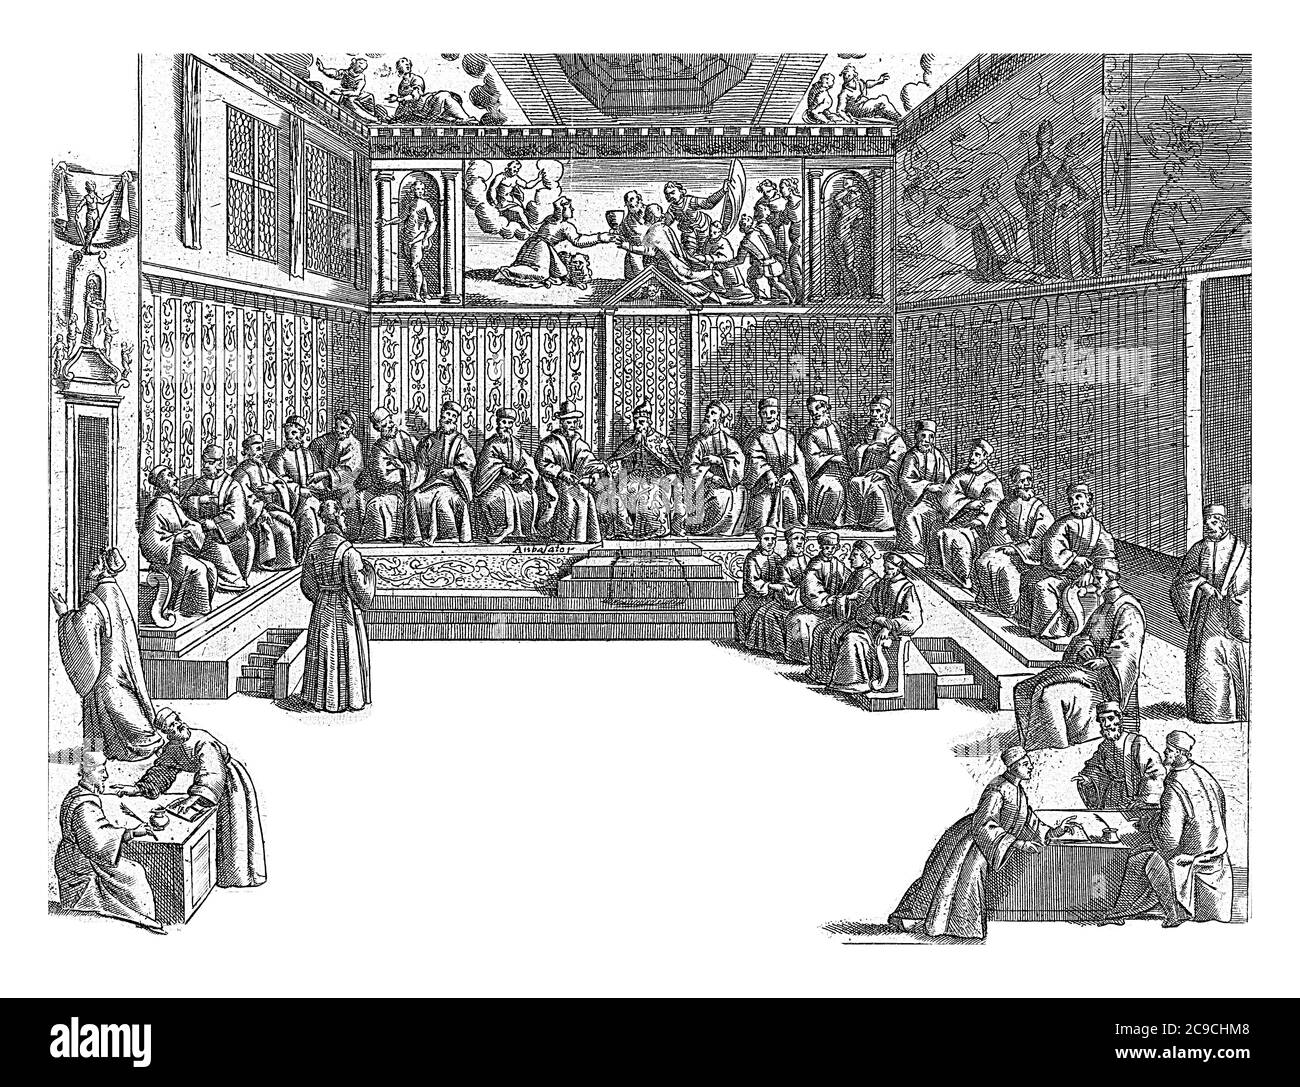 Rencontre dans la Sala del Collegio, anonyme, 1610 intérieur de la Sala del Collegio dans le Palais des Doges à Venise. La cale de Venise se trouve au milieu Banque D'Images